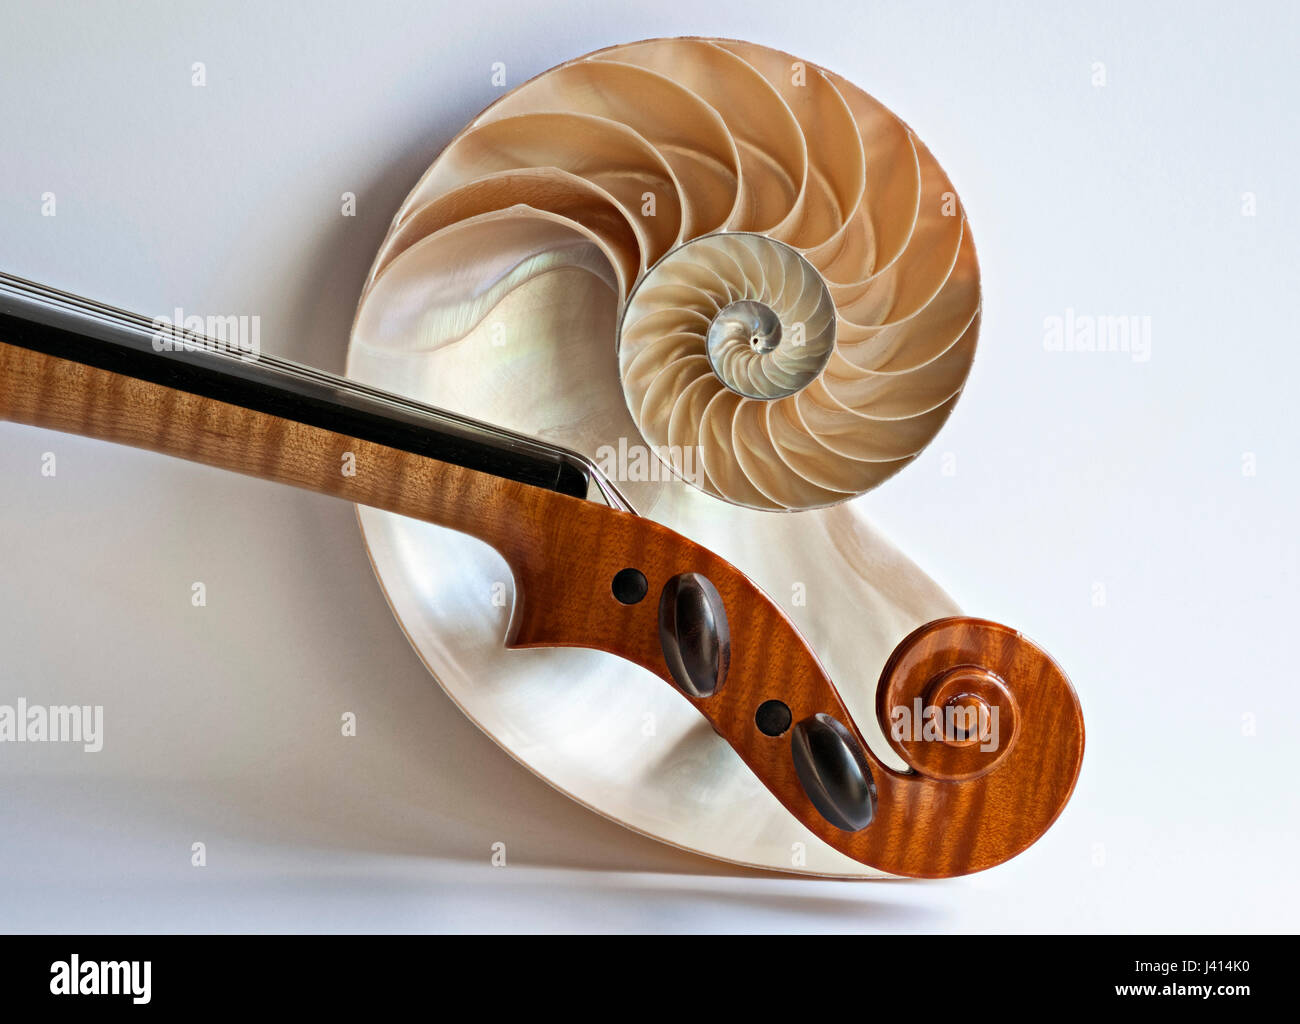 Violon violon alto et défilement sectioned Nautilus shell, focus-stacked image à l'aide de fenêtre donnant la lumière naturelle de subtiles ombres sur fond clair. Banque D'Images